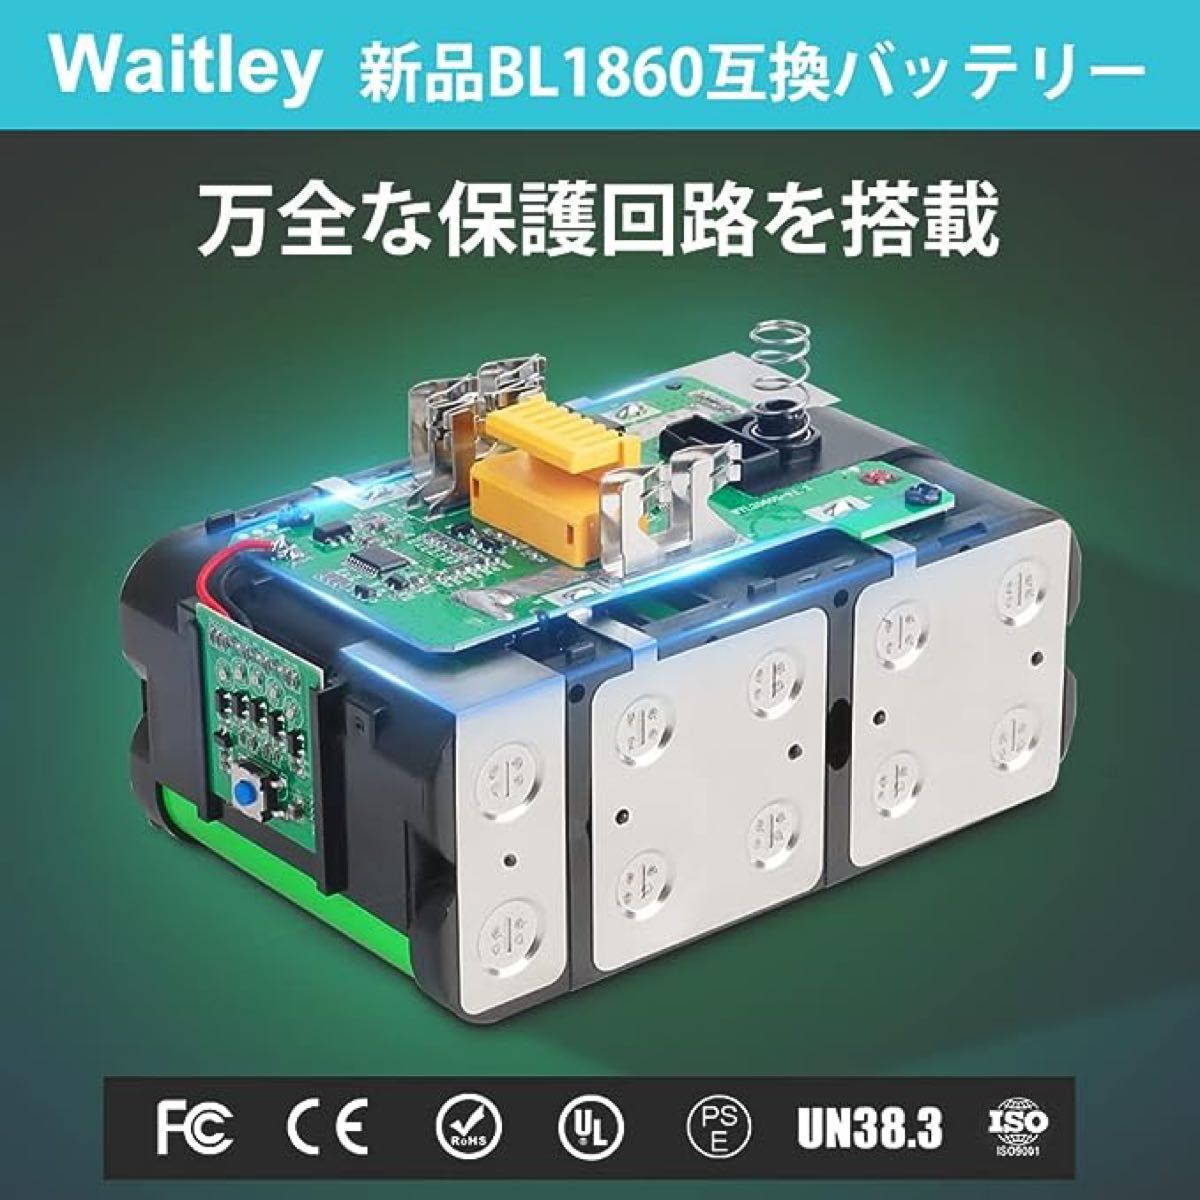 USB充電アダプター付 マキタBL1860B互換 18V 6.0Ah WAITLEY 電動工具用バッテリー 大容量 LED残量表示